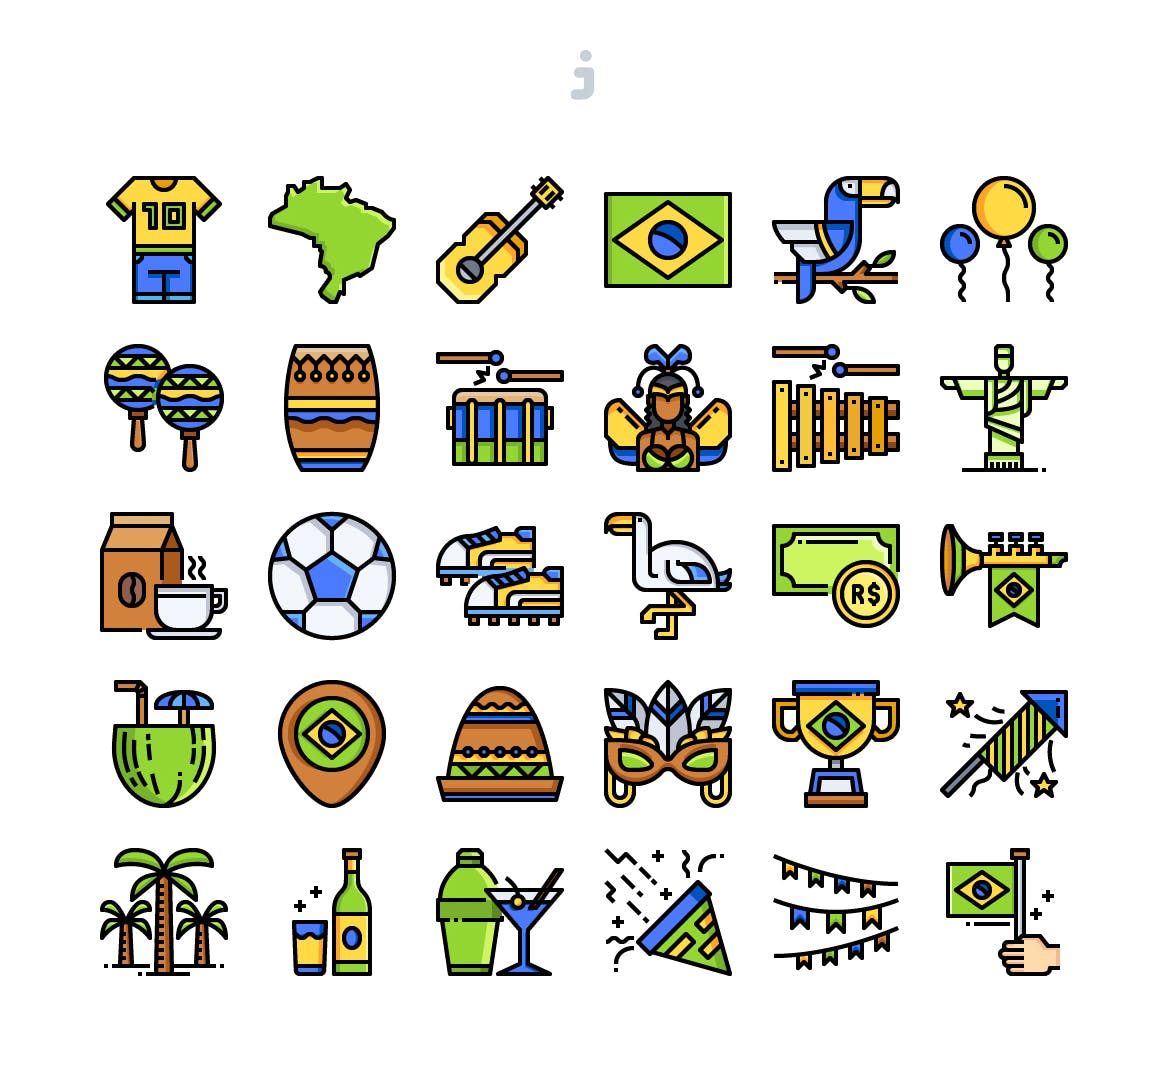 30个巴西球赛元素矢量图标源文件下载30 Brazil Element Icons插图1